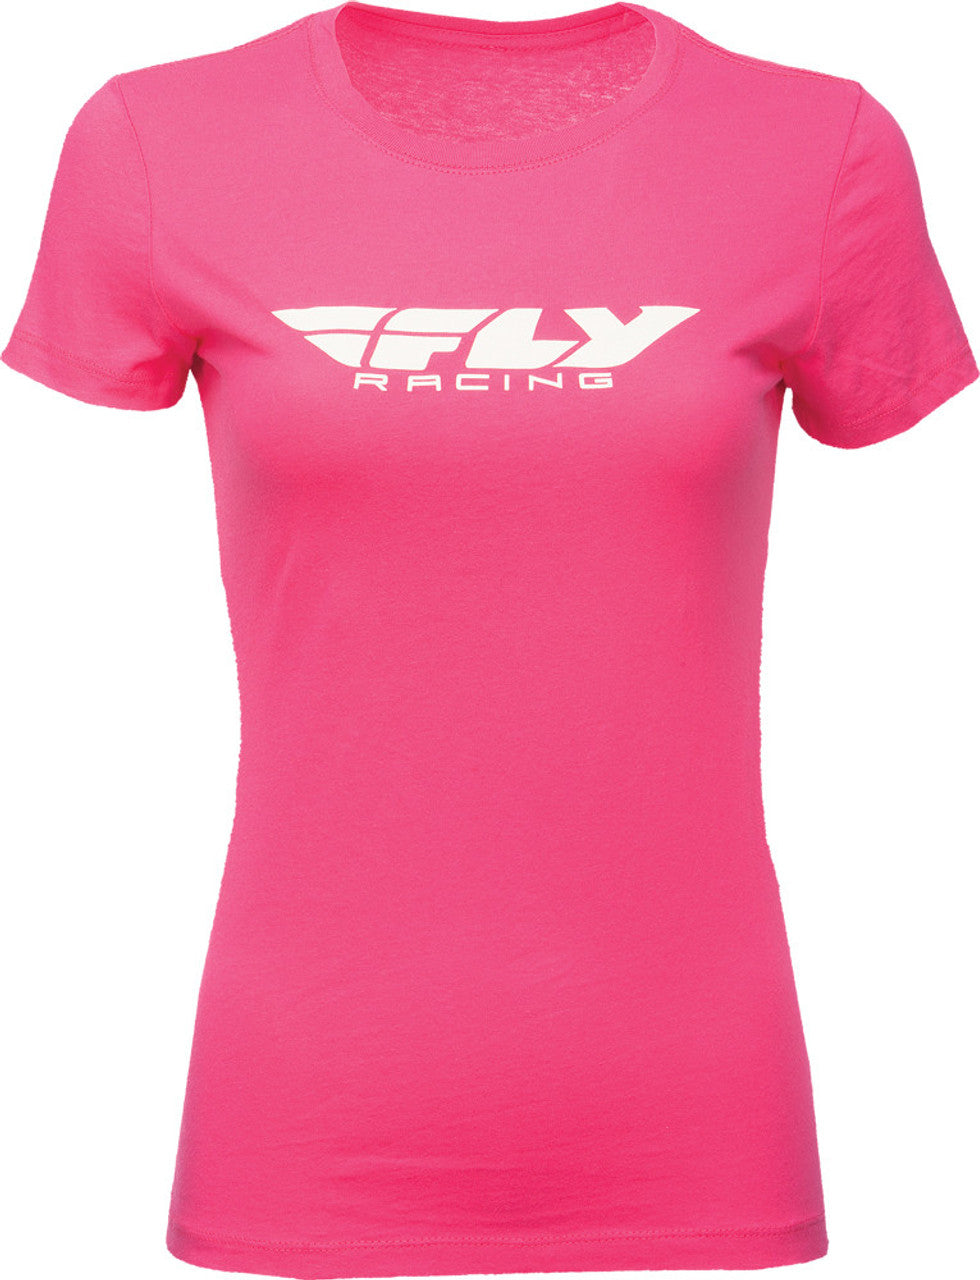 Fly Racing Tee Women's Corporate